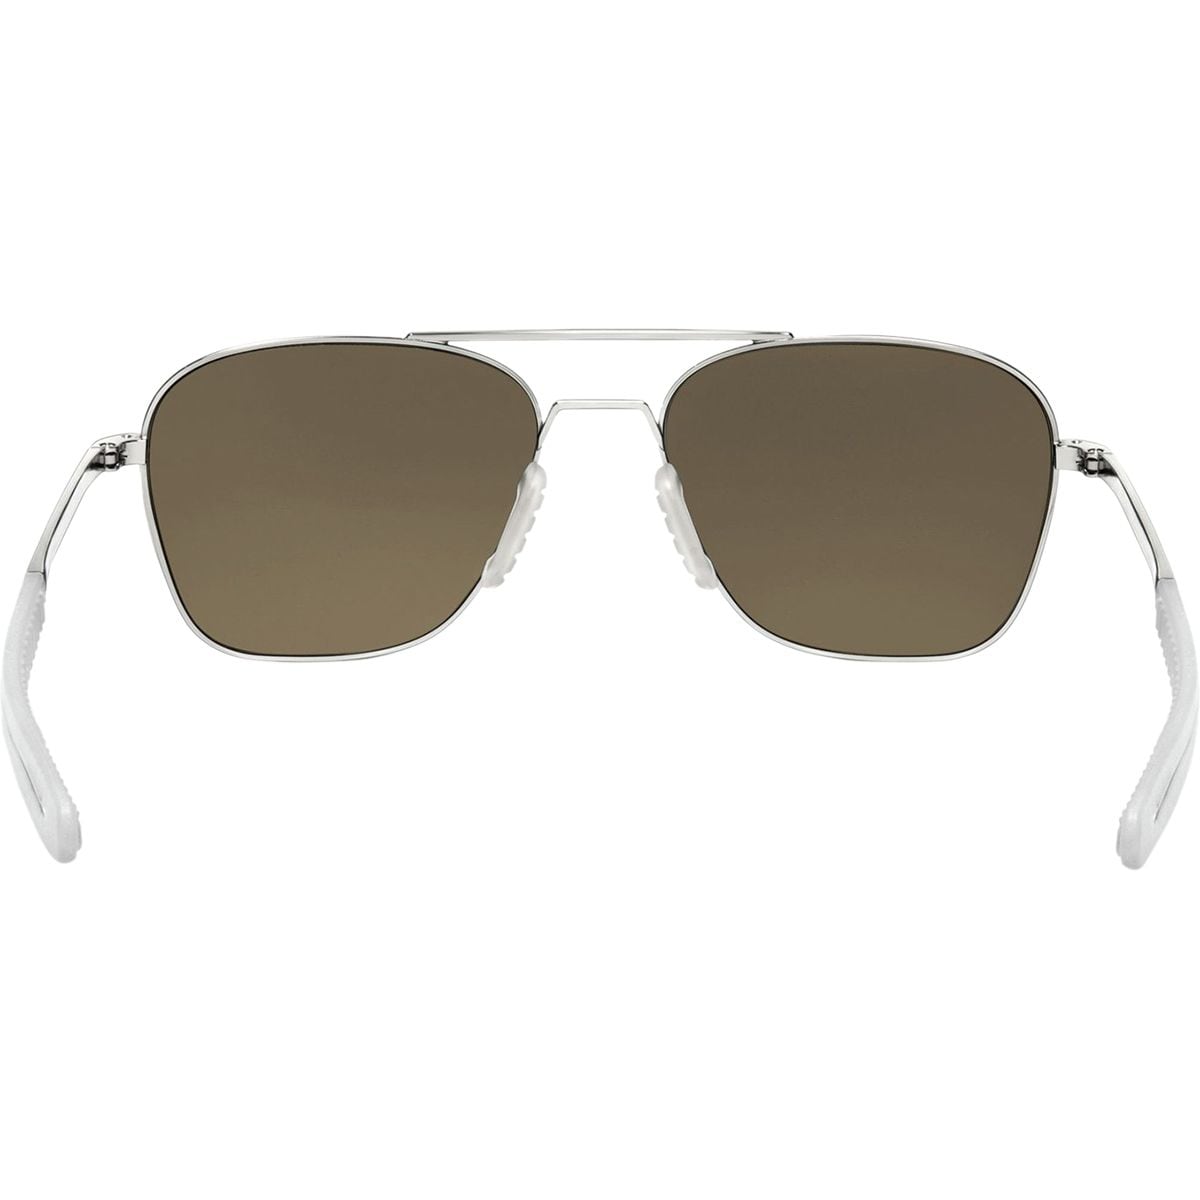 Roka Falcon Alloy Sunglasses - Accessories